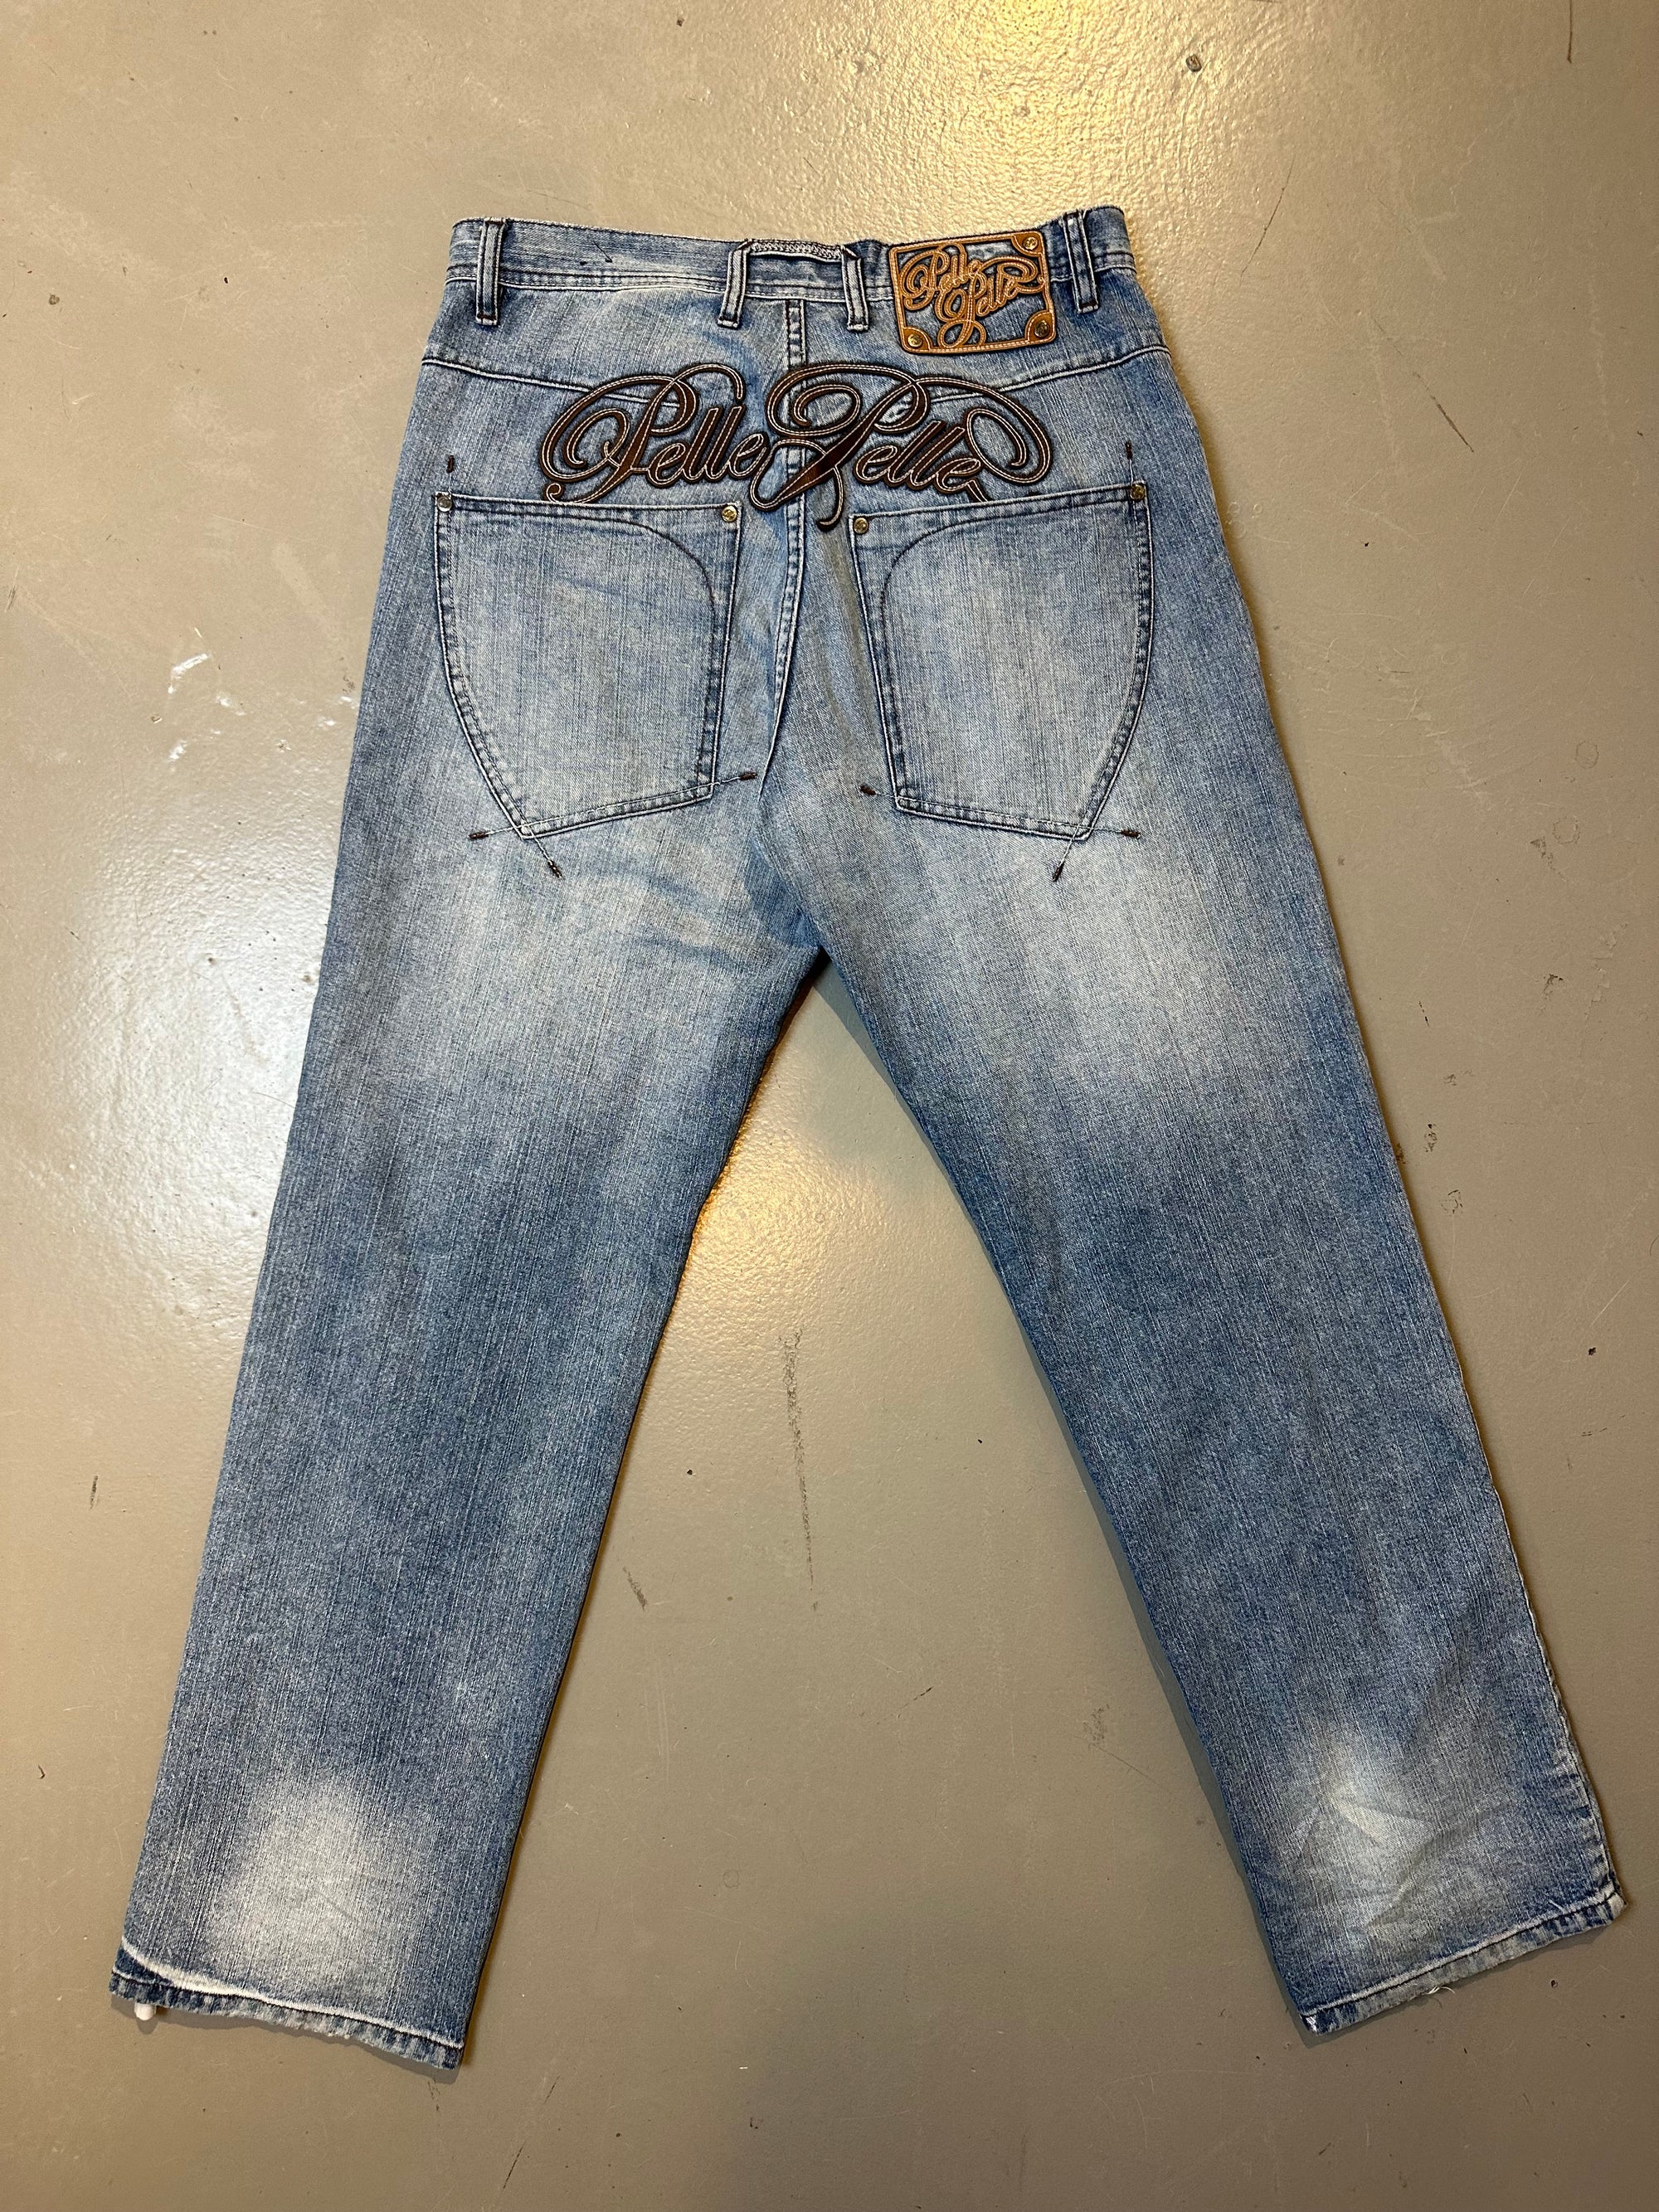 Vintage Baggy Pelle Pelle Denim Pants M/L